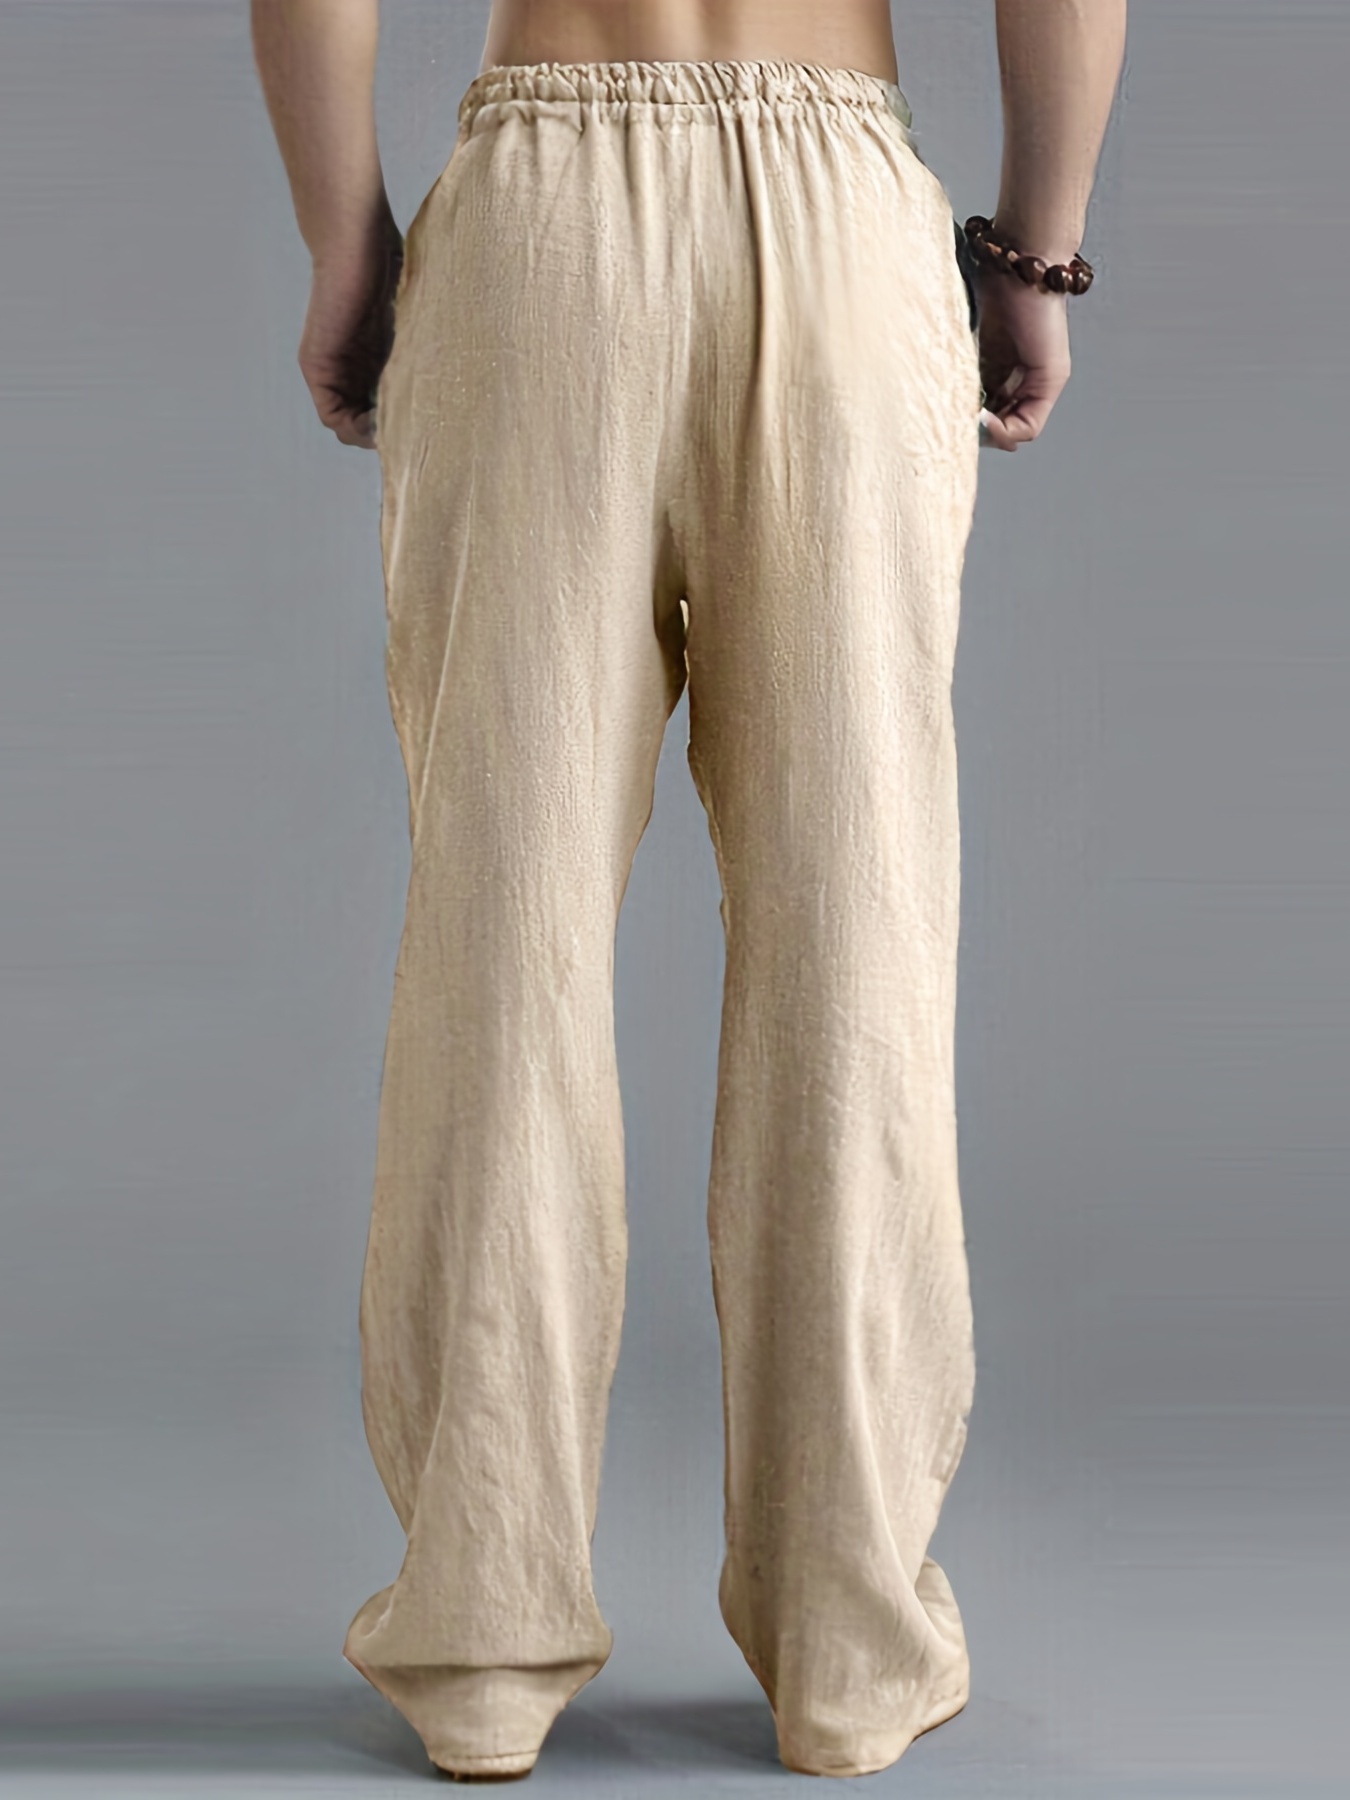 Pantalon en coton et lin pour homme, respirant, couleur unie.